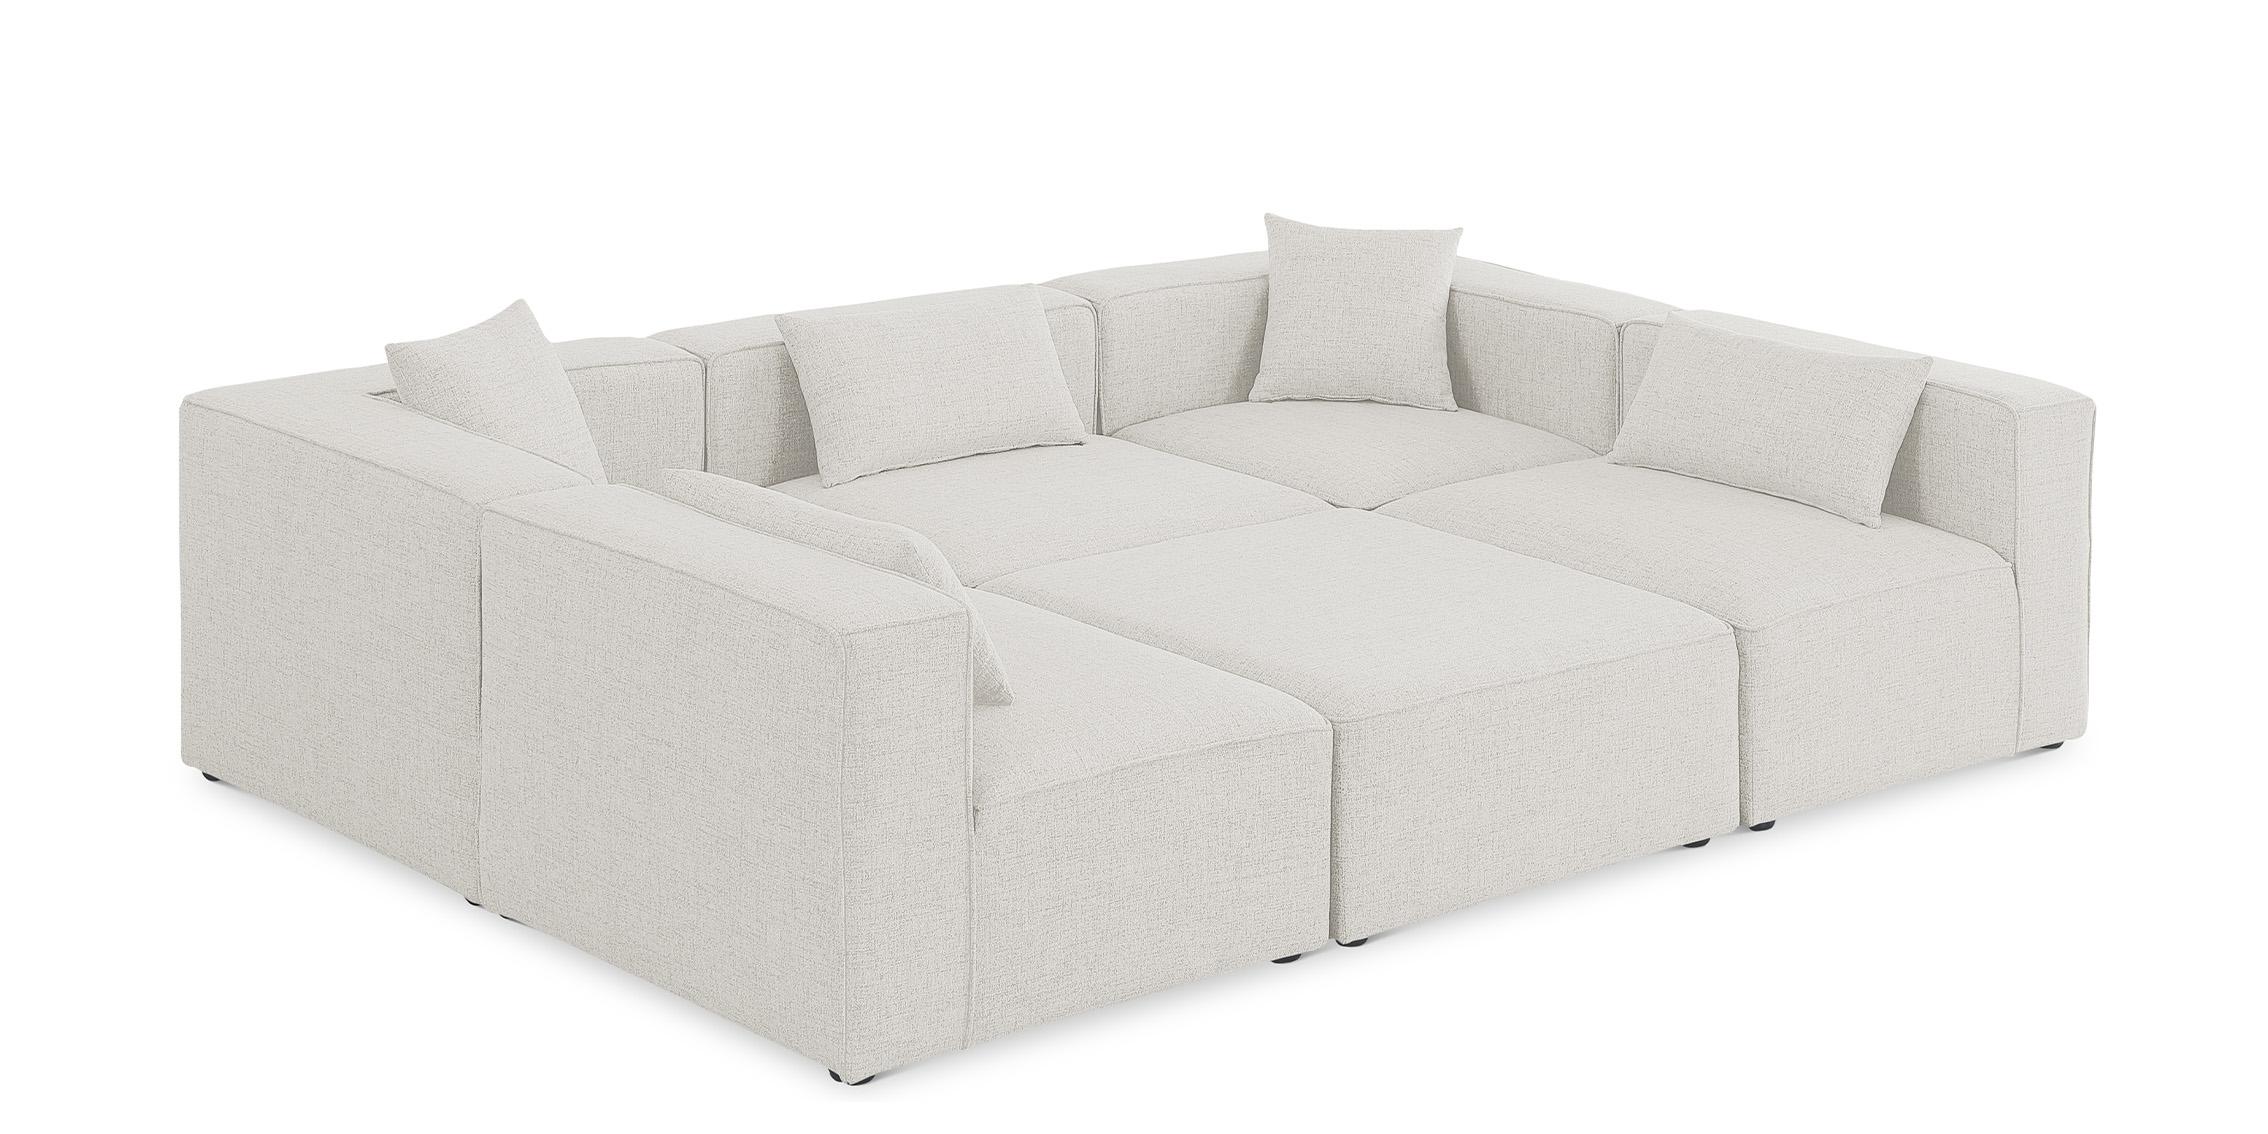 Contemporary, Modern Modular Sectional Sofa CUBE 630Cream-Sec6C 630Cream-Sec6C in Cream Linen